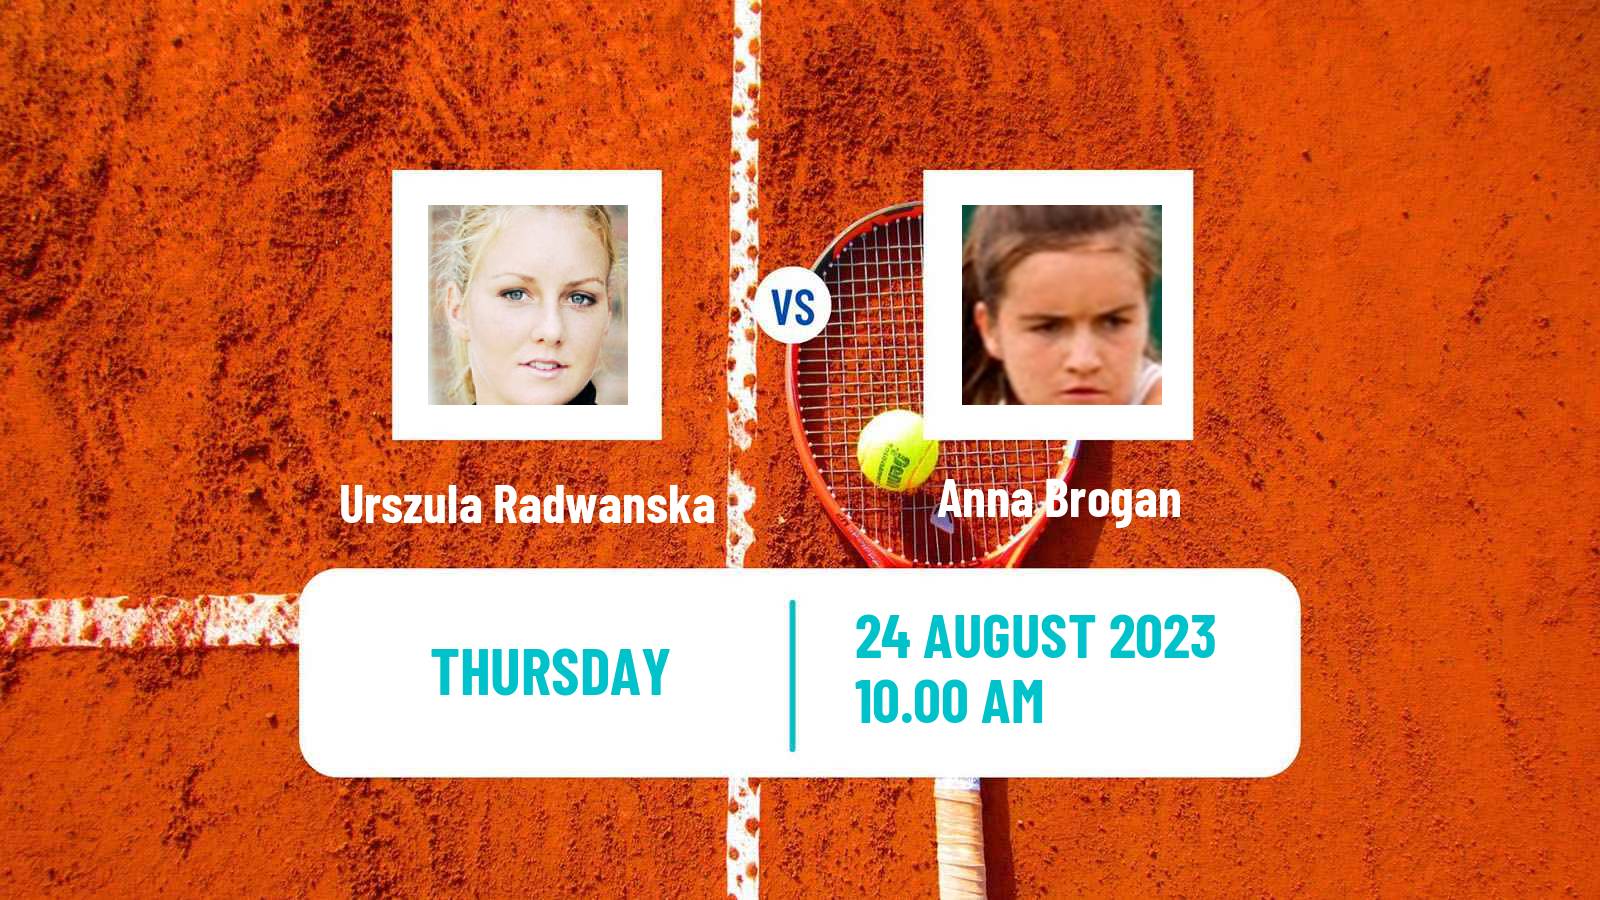 Tennis ITF W25 Vigo Women Urszula Radwanska - Anna Brogan